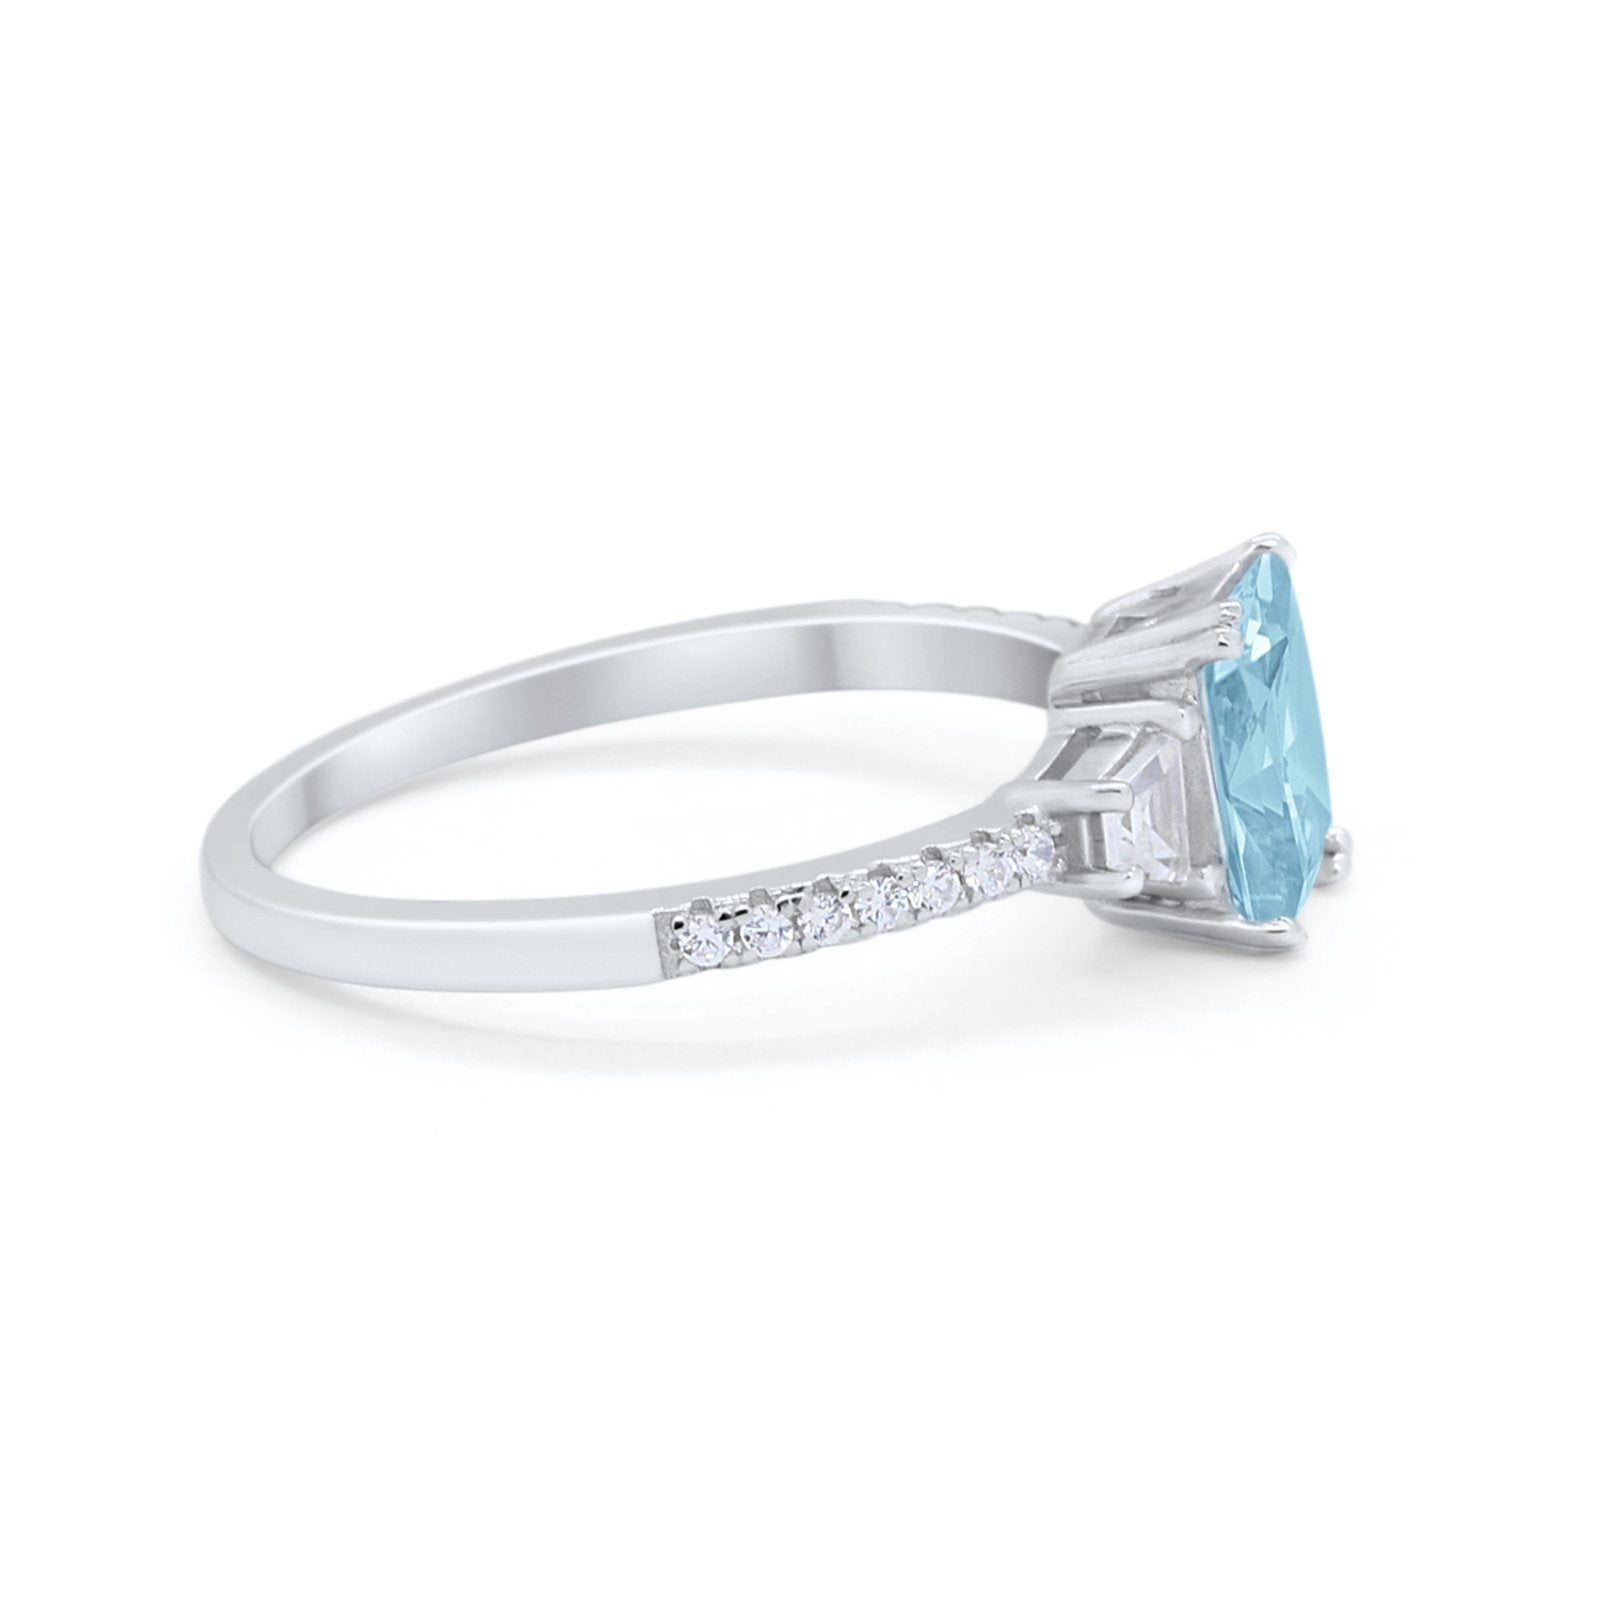 Emerald Cut Three Stone Wedding Ring Simulated Aquamarine CZ 925 Sterling Silver